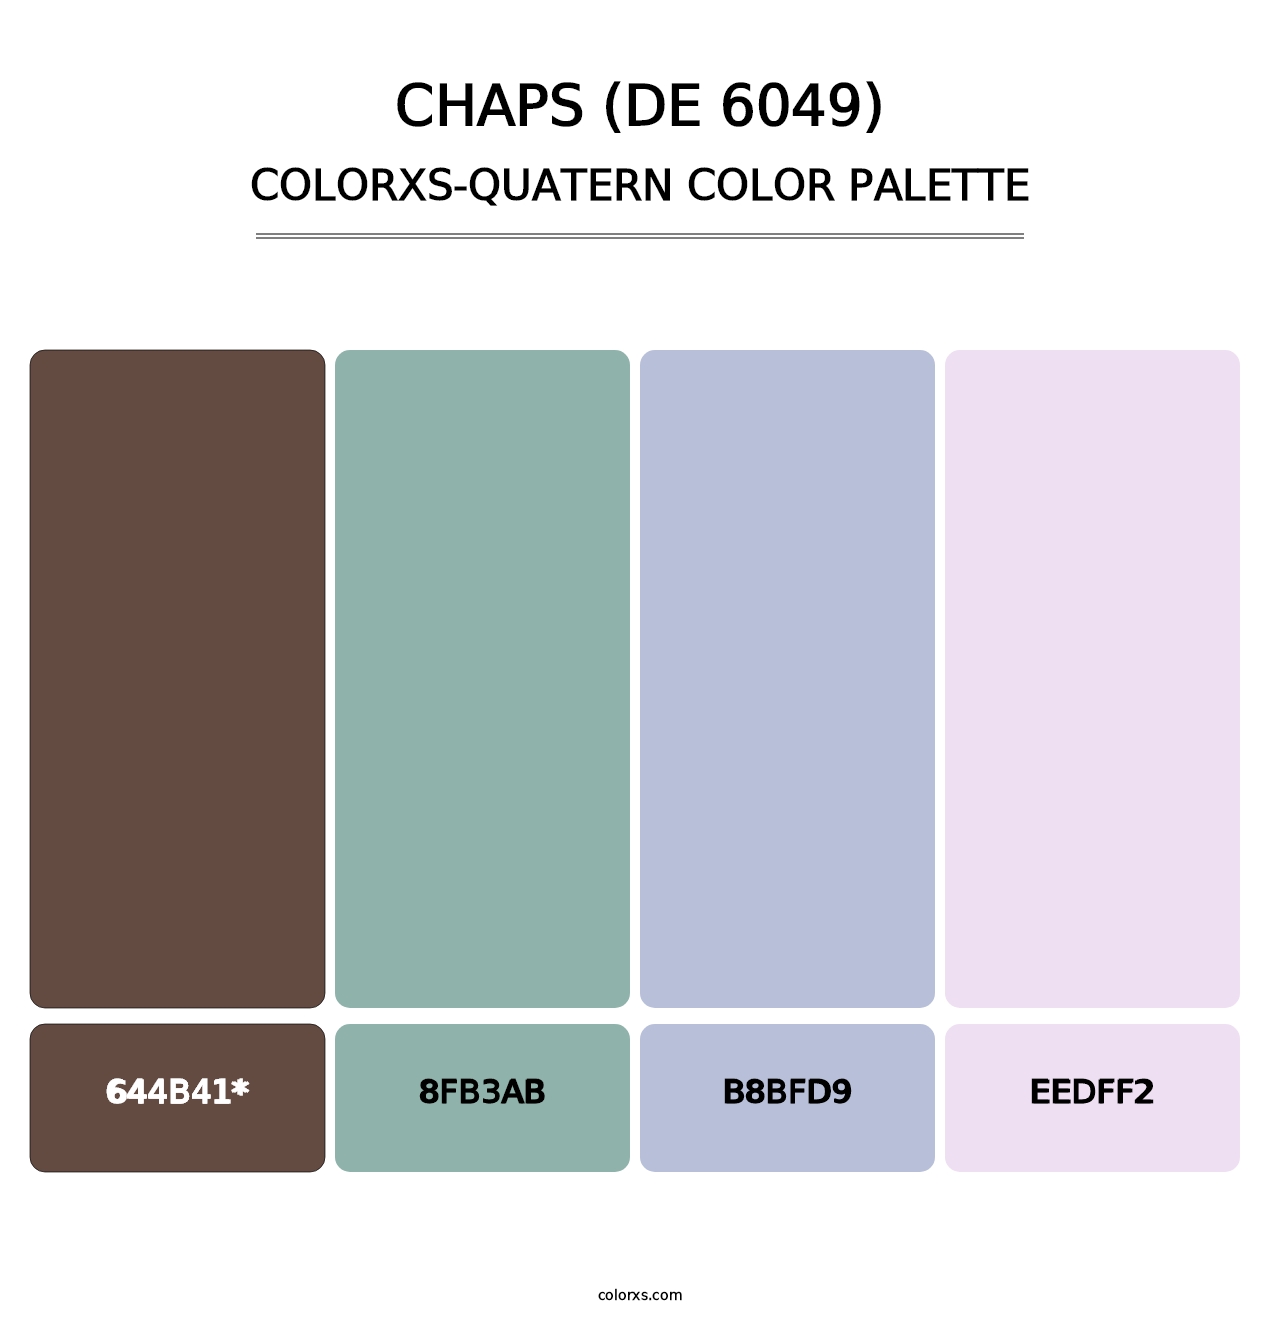 Chaps (DE 6049) - Colorxs Quatern Palette